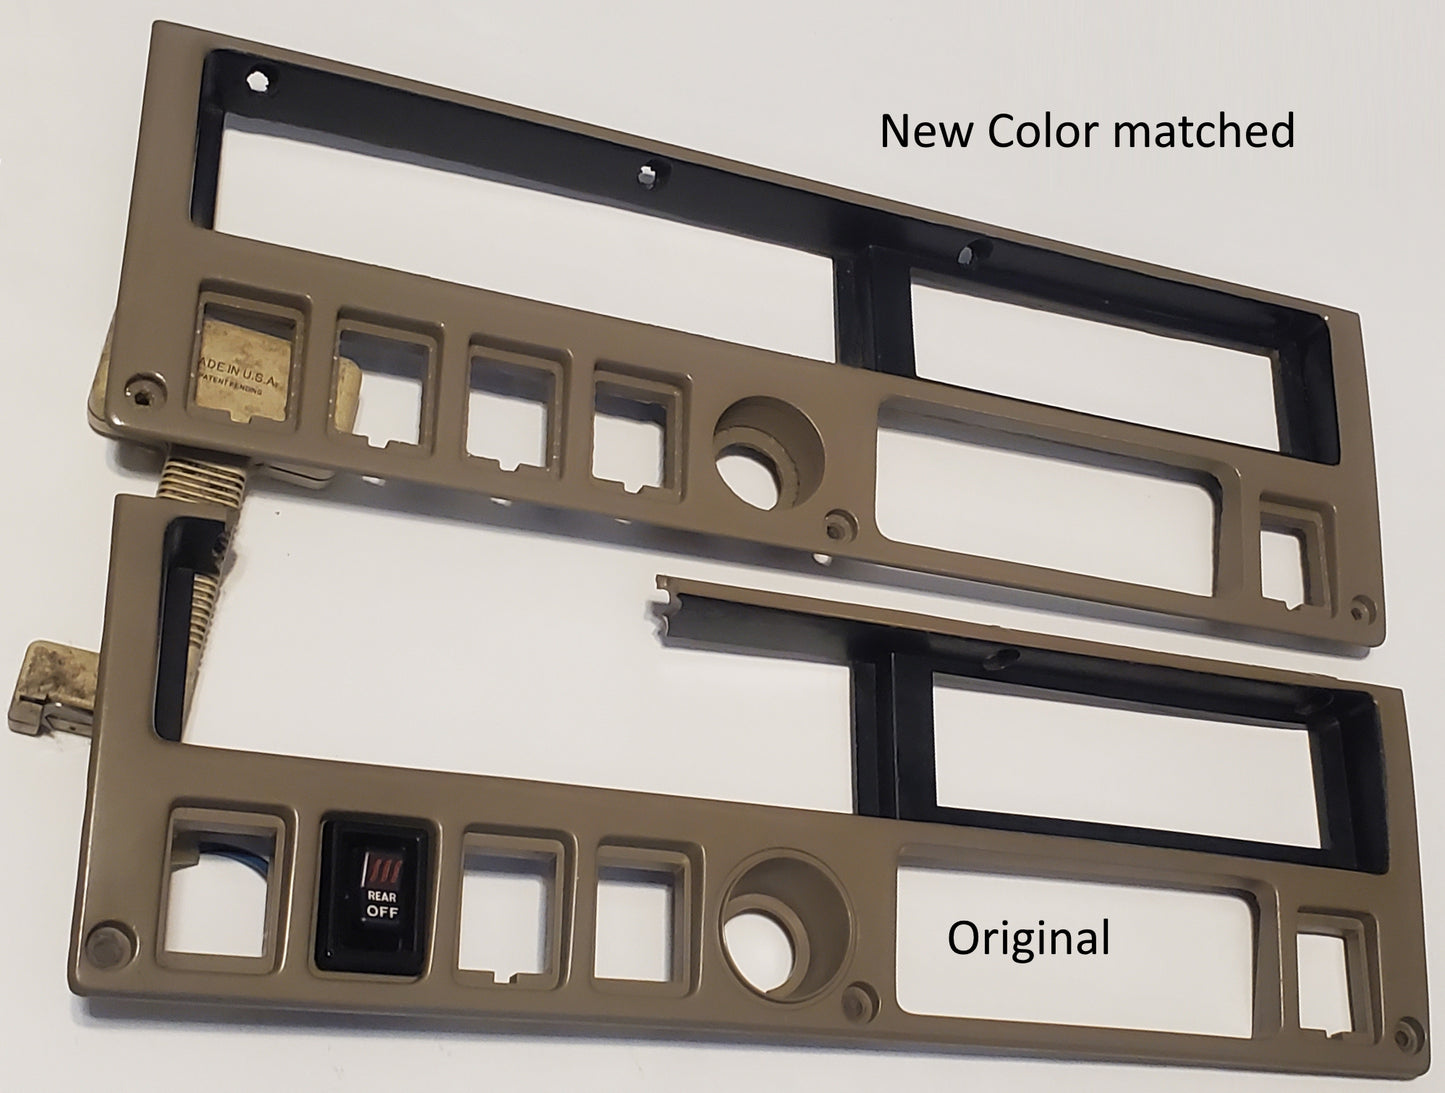 FJ60 reproduction bezel color comparison between original and new, Cruiser Head FJ60 Solutions Bezel for FJ60 New Replacement